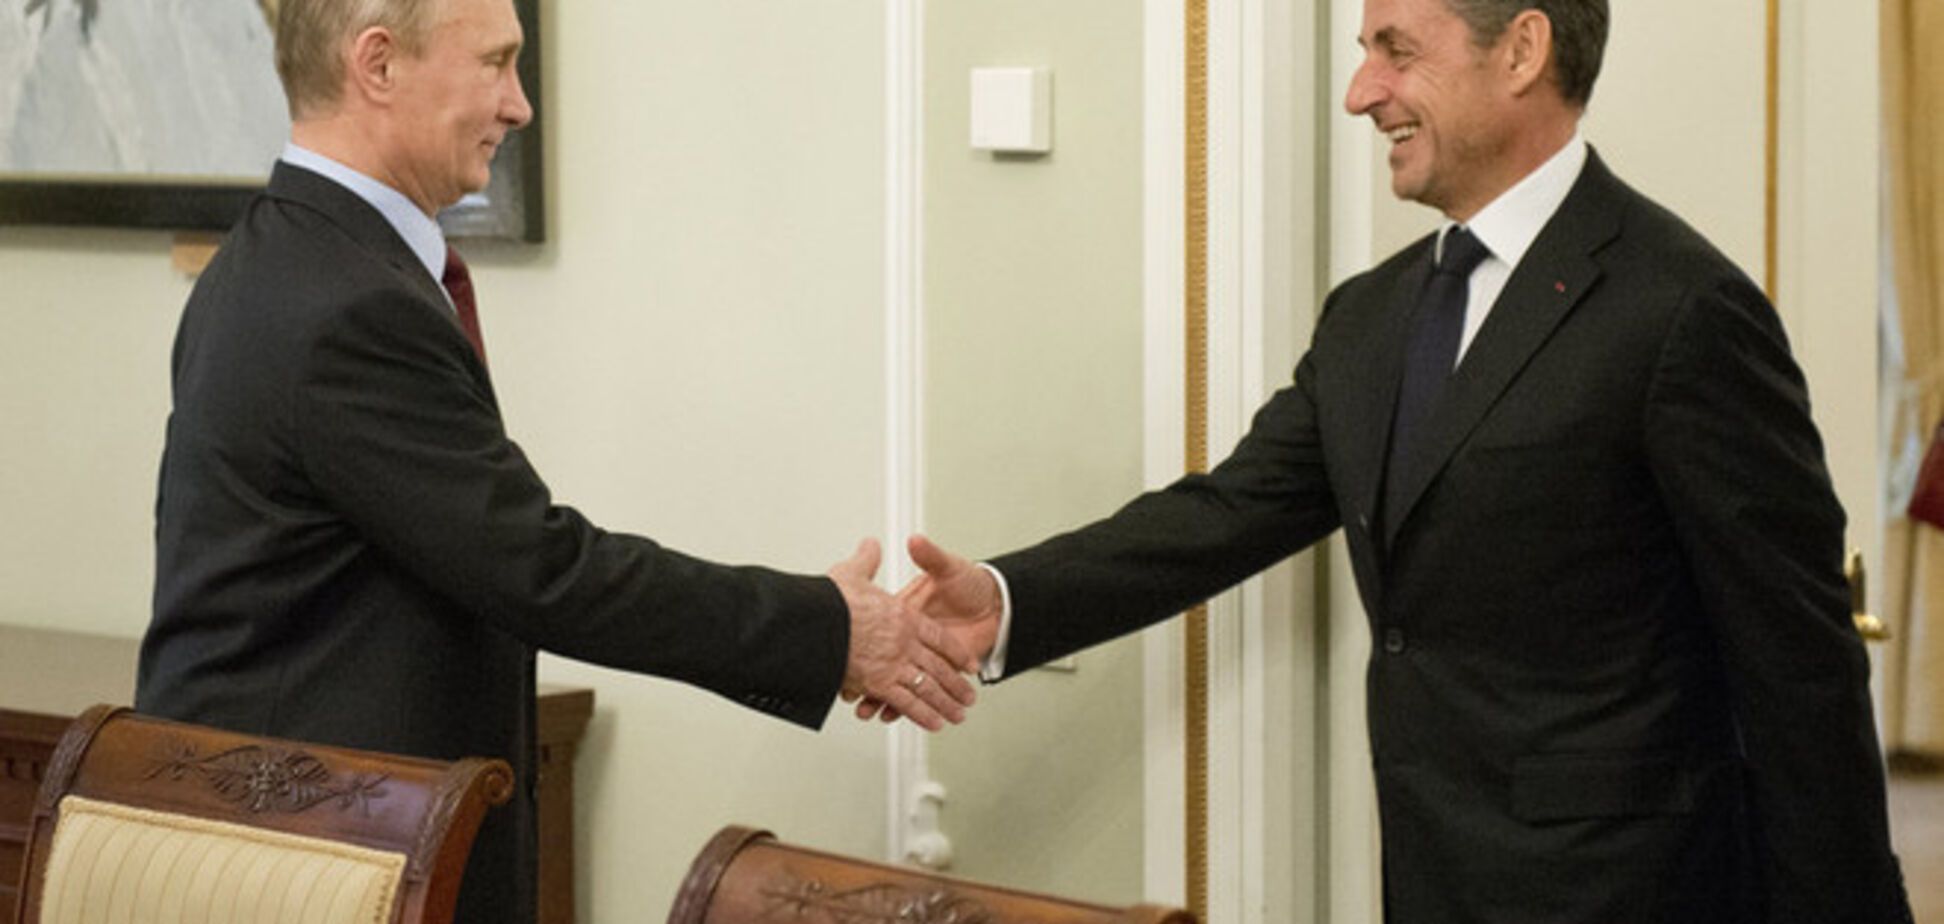 Путин в своей сочинской резиденции встретился с Саркози